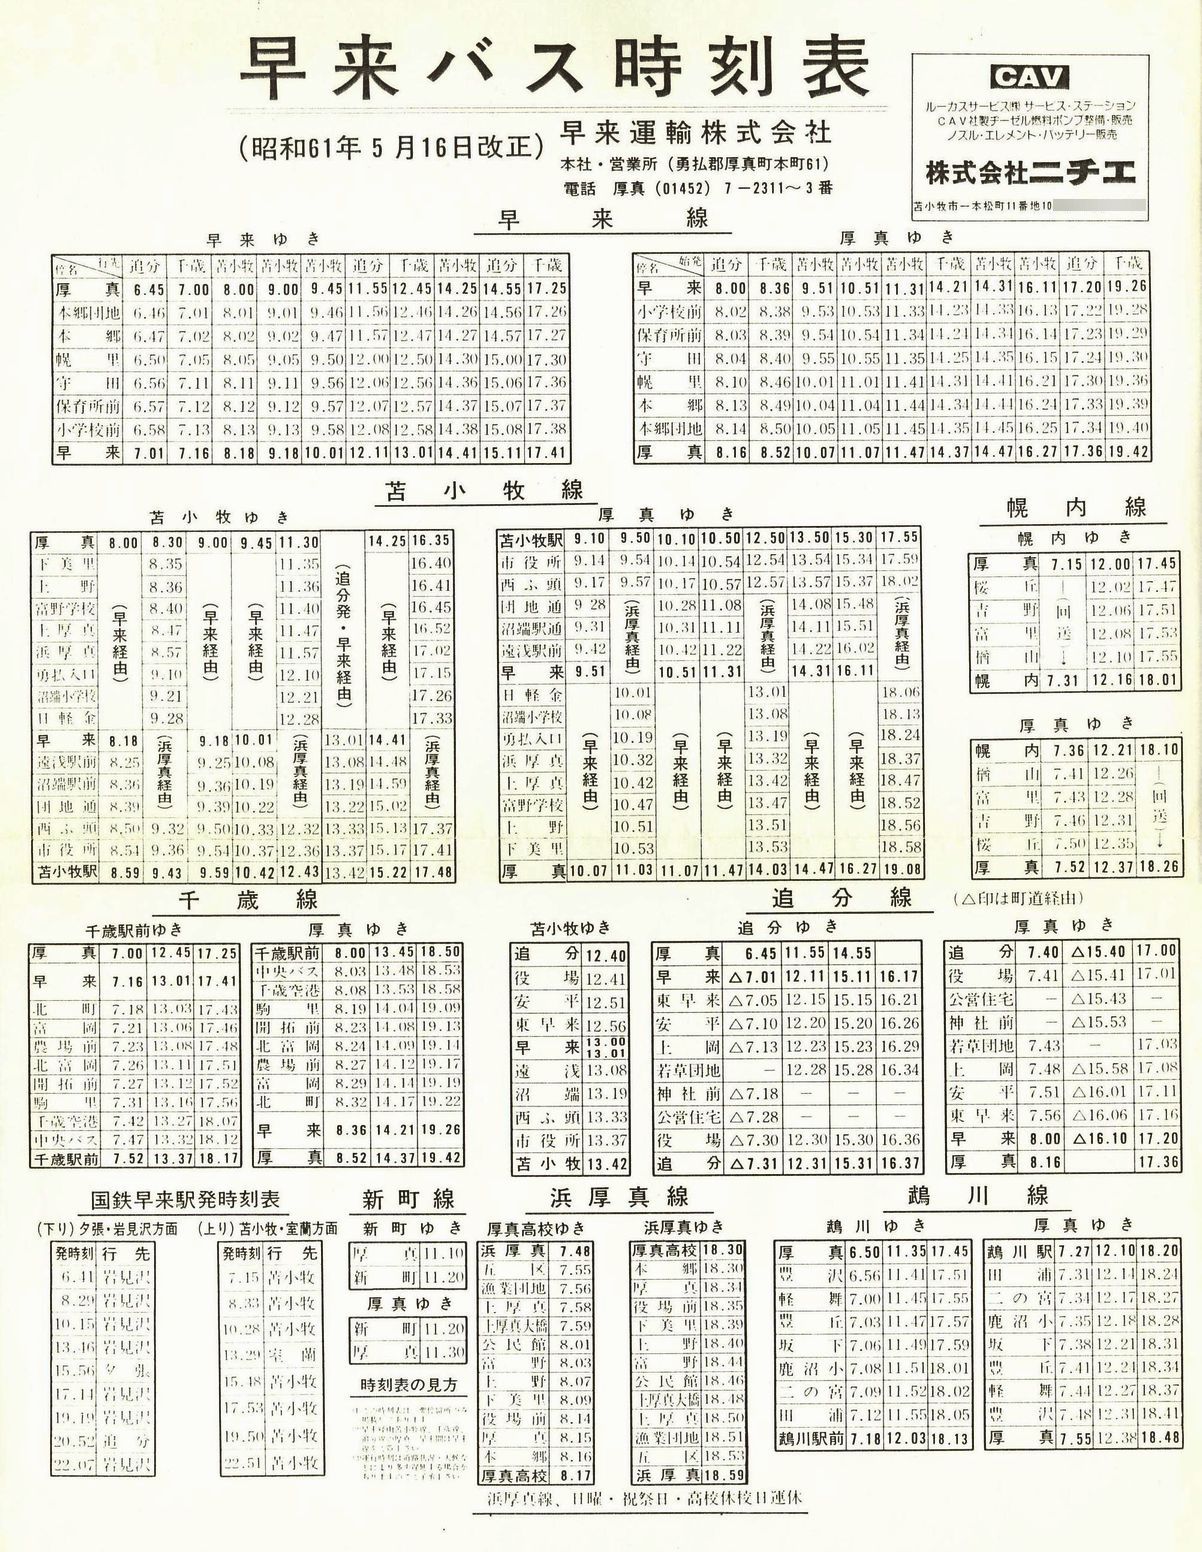 1986-05-16改正_早来運輸_時刻表